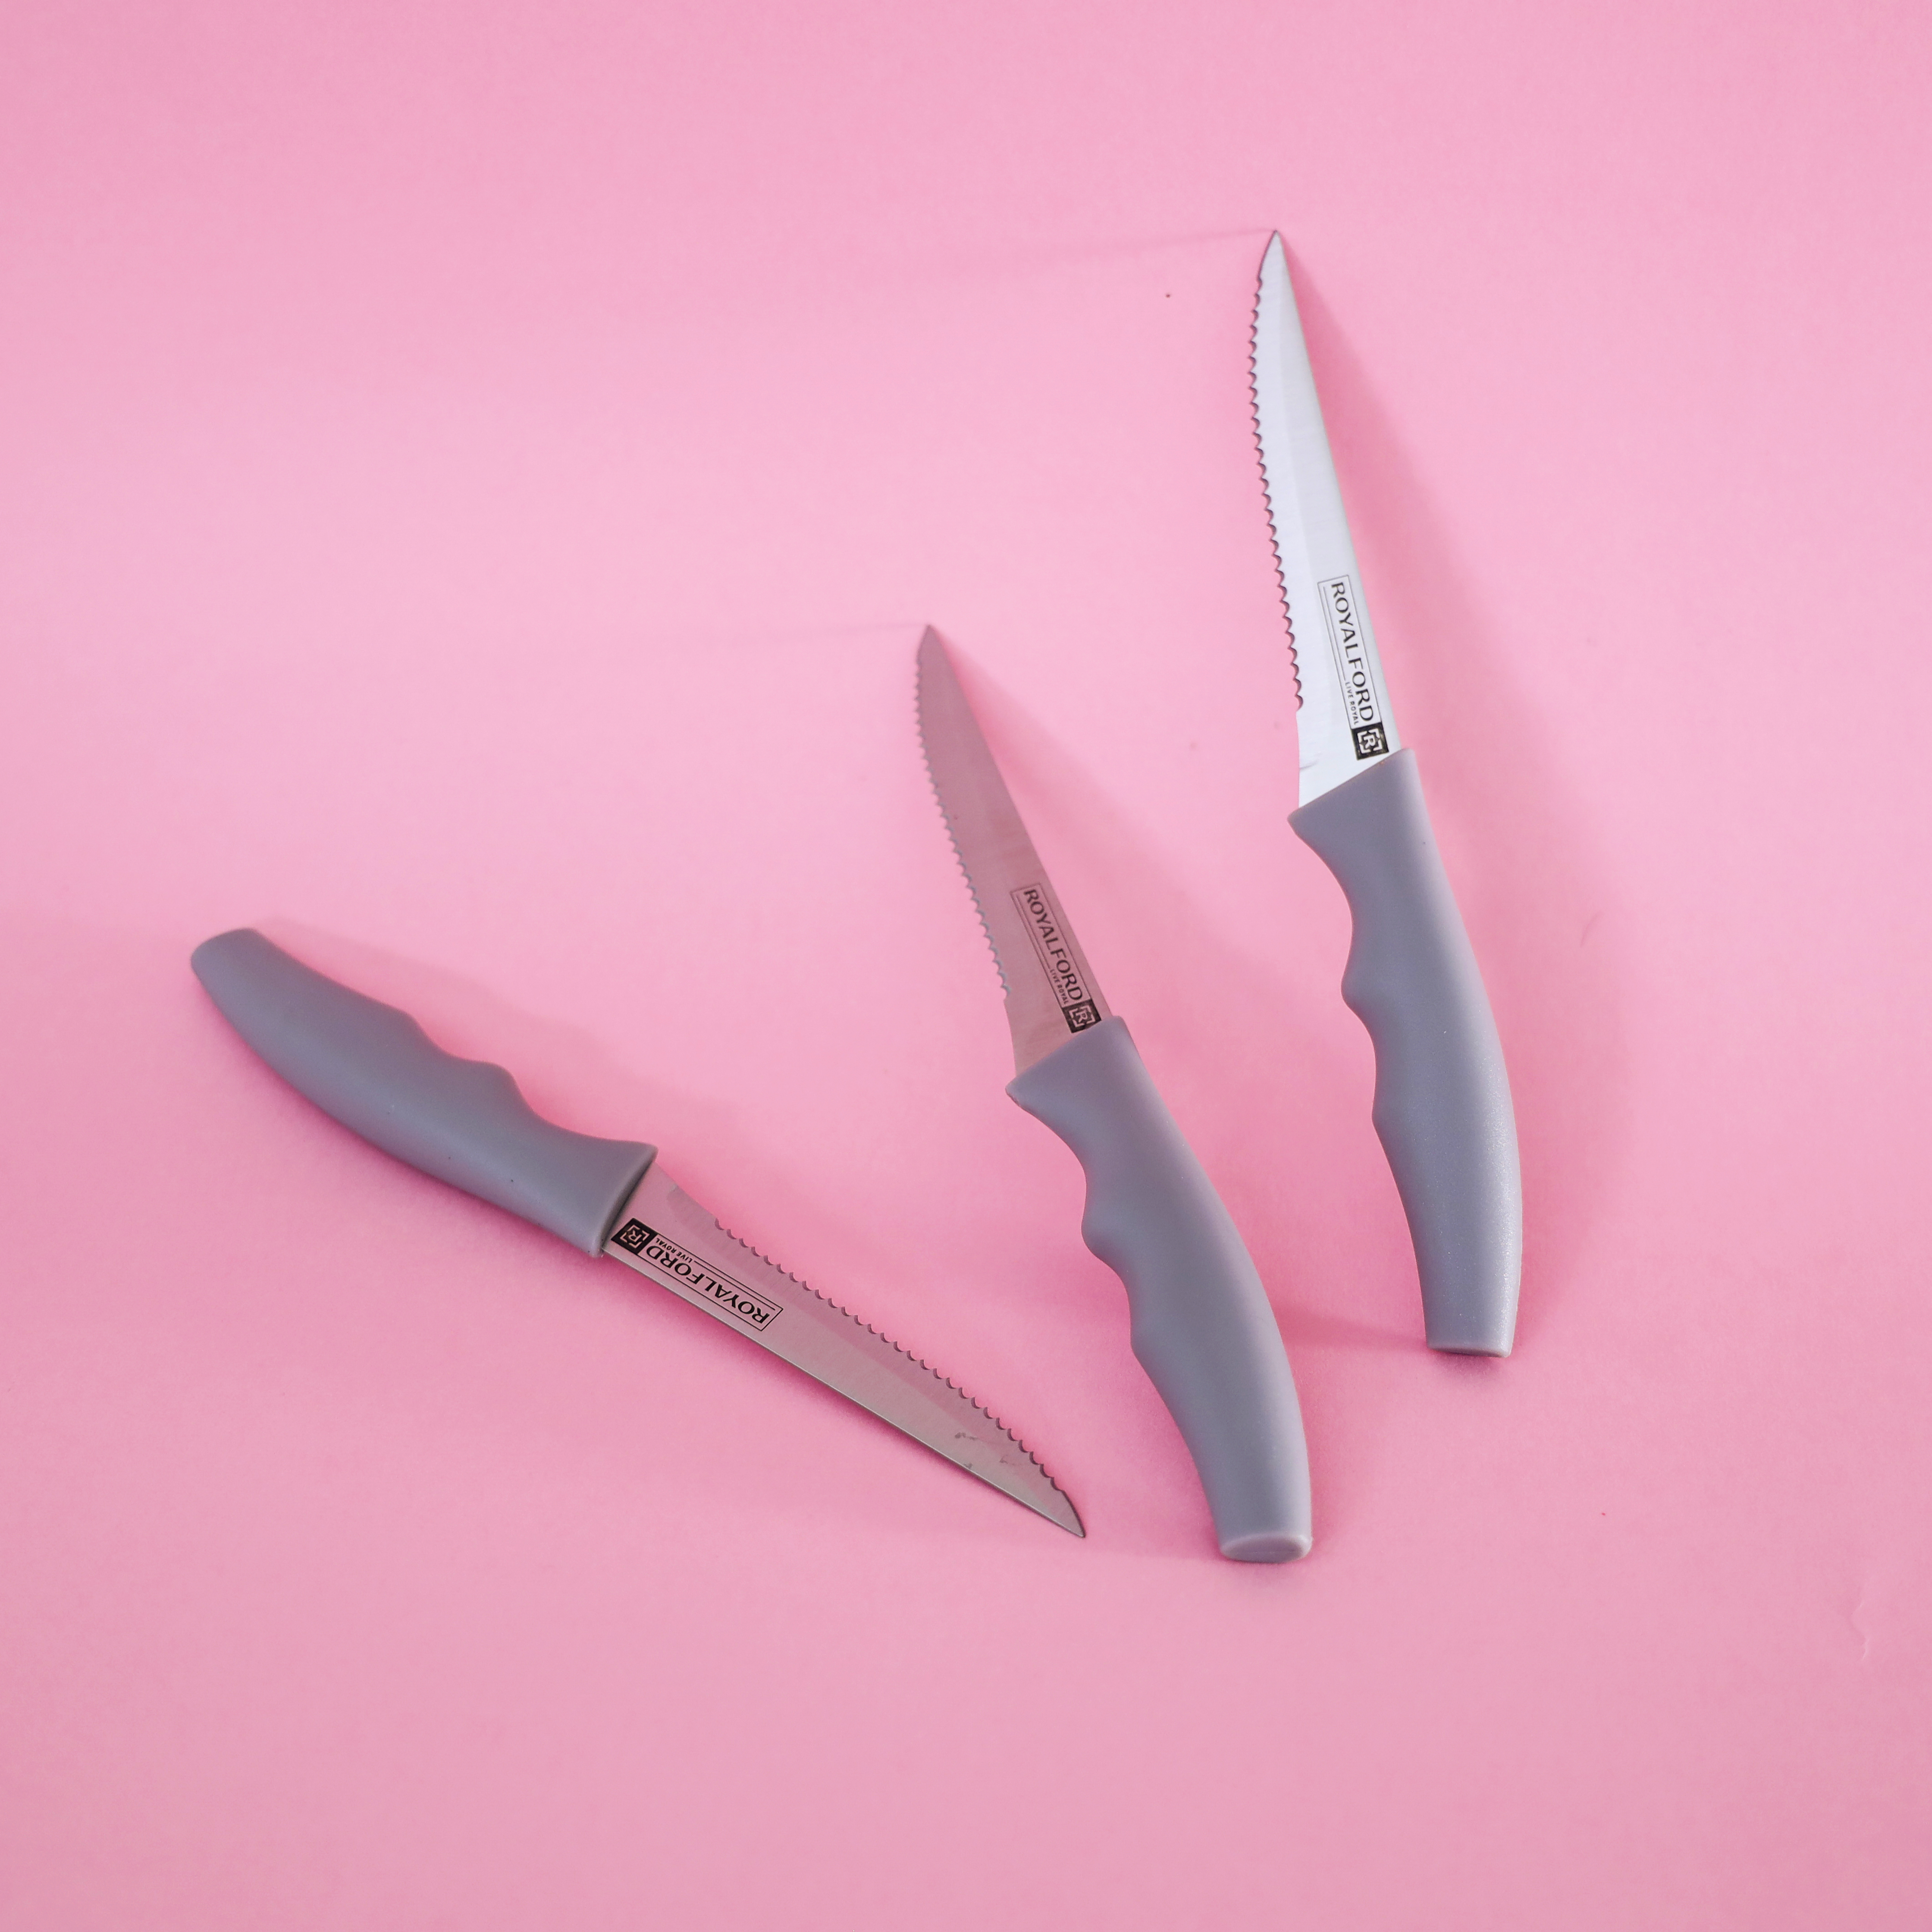 Stainless Steel Forever Sharp Knife Comfort Handle Knife Pairing Knife 